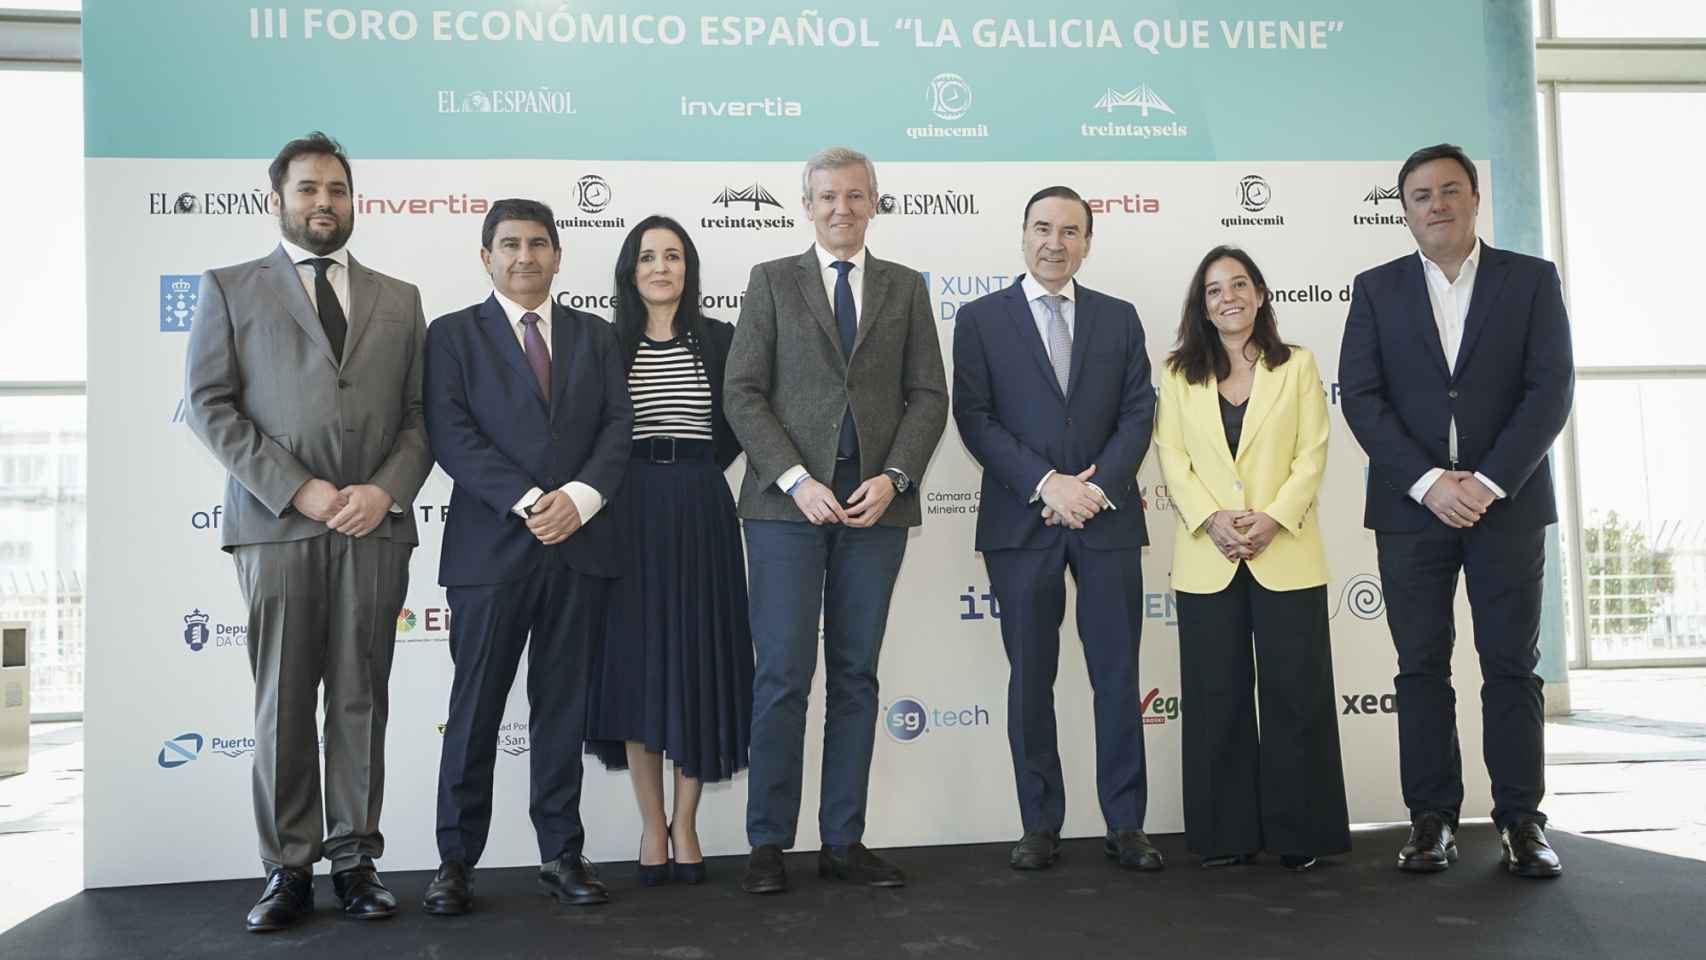 Primera jornada del III Foro Económico Español en Galicia 'La Galicia que viene'